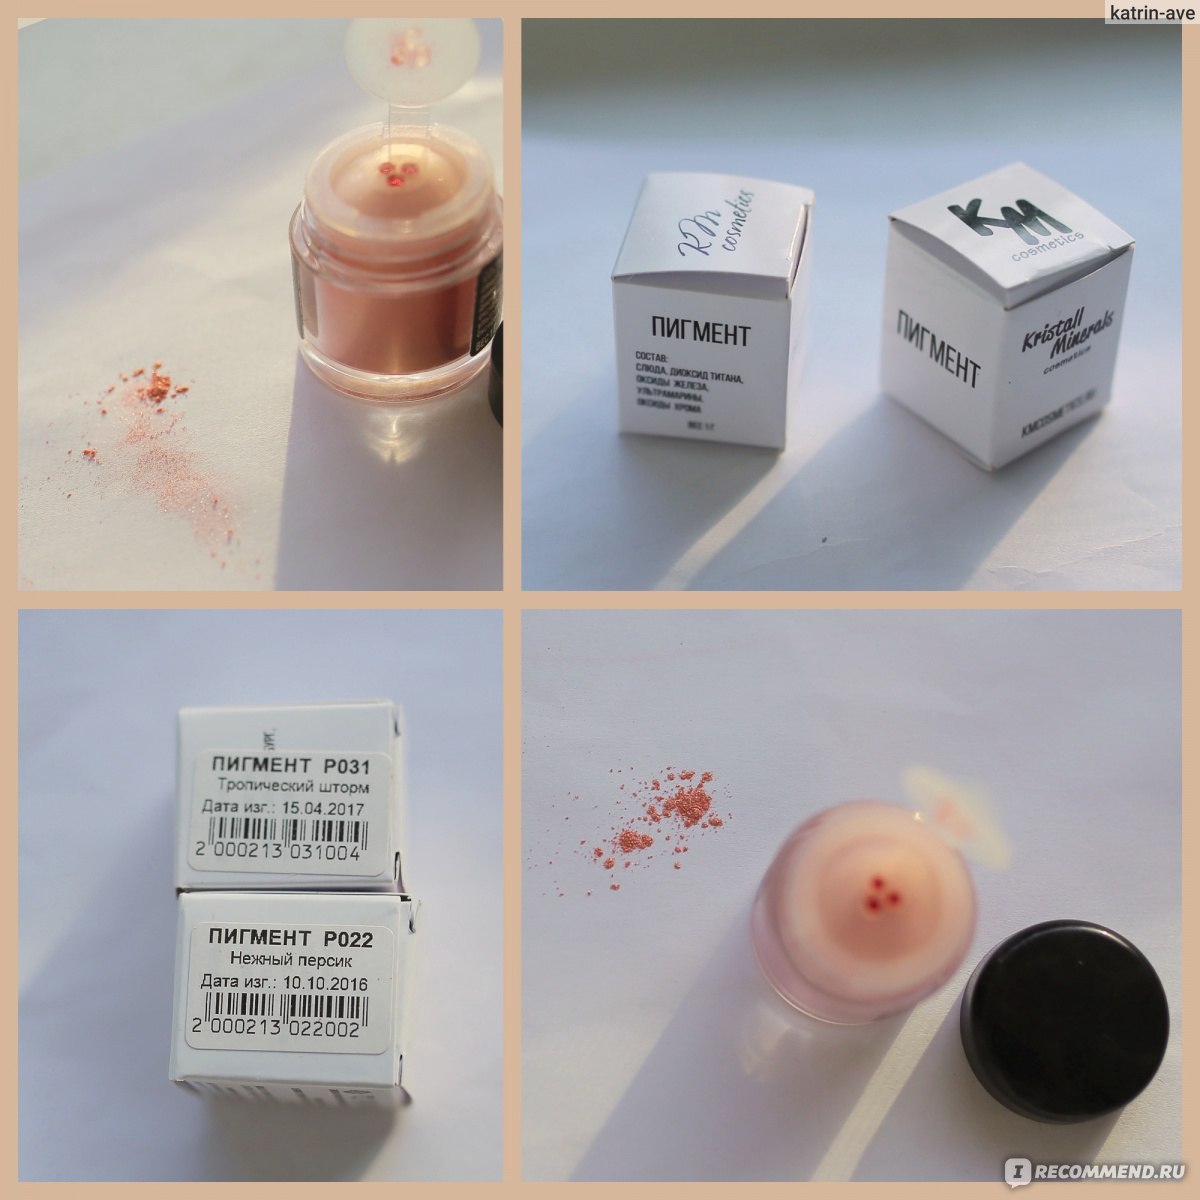 Пигменты для век KM cosmetics «Нежный персик» из коллекции «Волшебный сад». фото